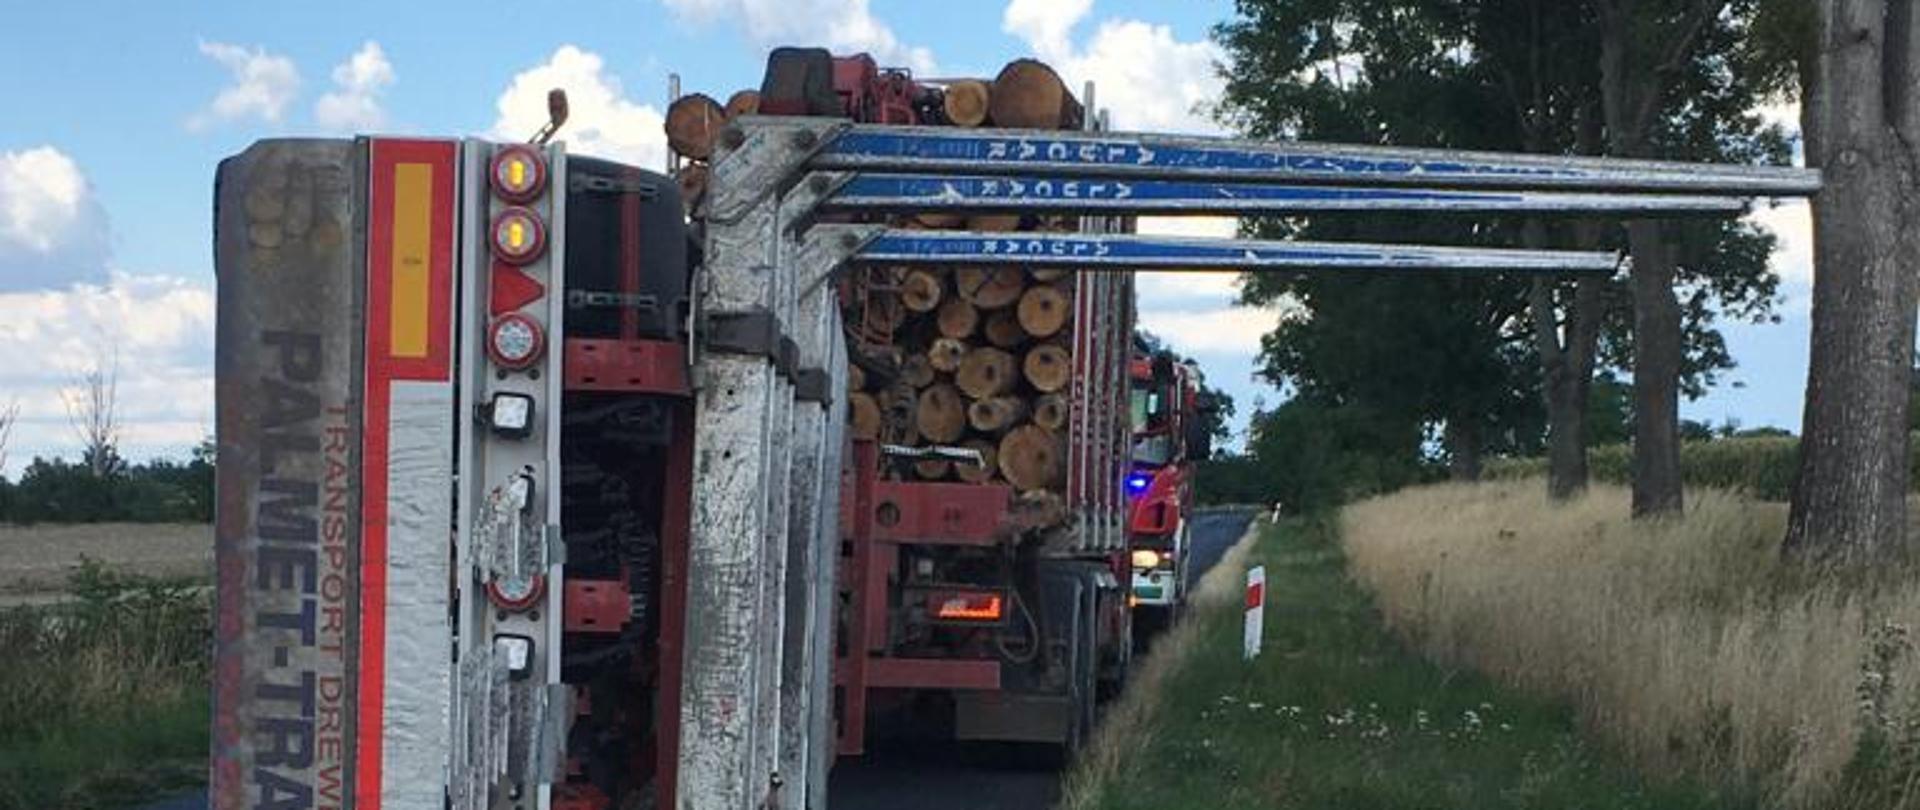 Wypadek z udziałem samochodu przewożącego drzewo na DW 462 w pobliżu Łosiowa - zdjęcie przedstawia położoną na boku pustą przyczepę, przed nią stoi samochód ciężarowy wypełniony drzewem